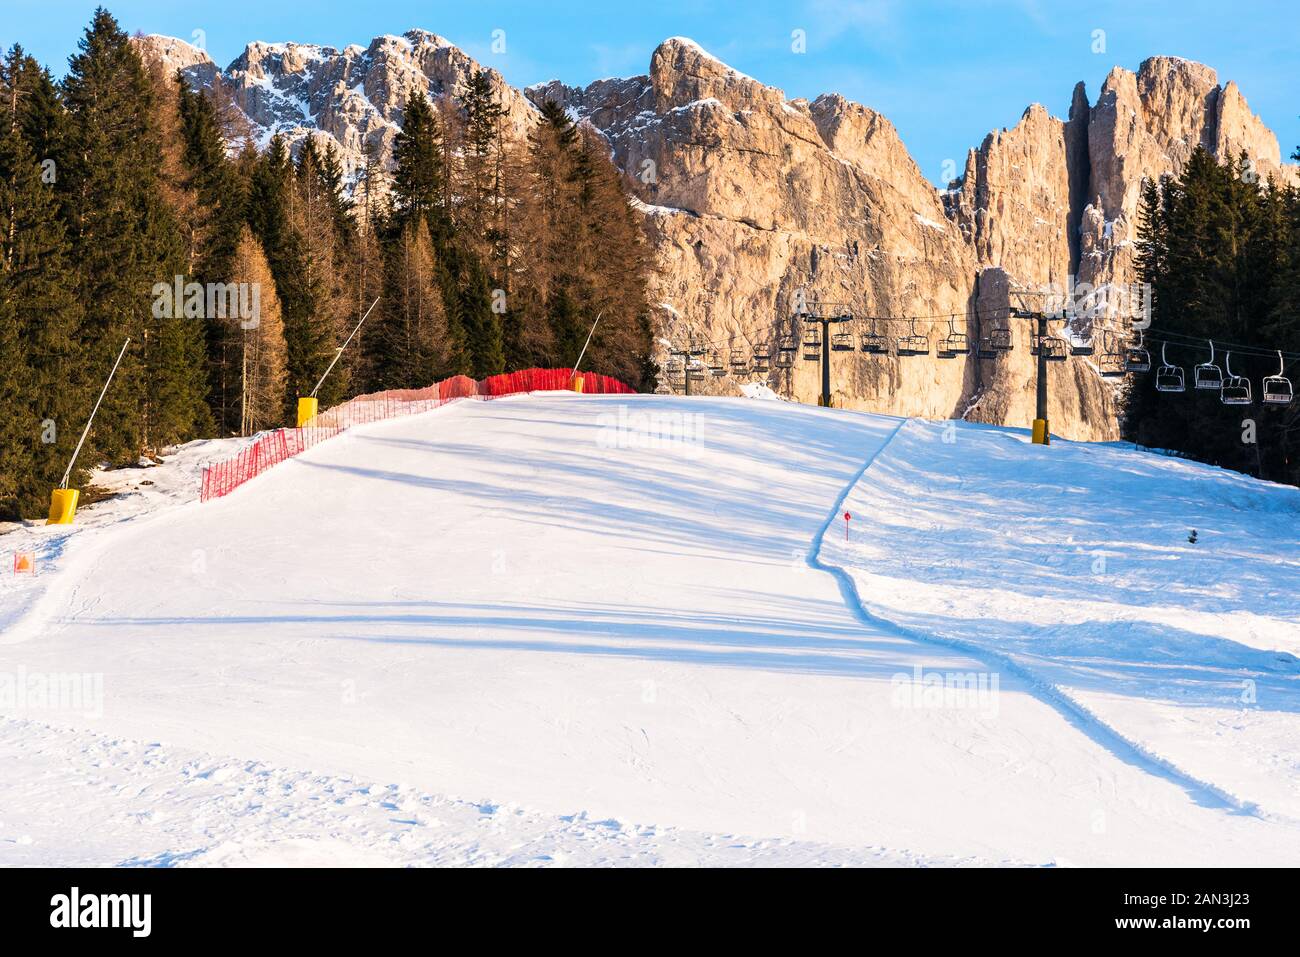 Deserte della pista da sci con una seggiovia in background ai piedi delle imponenti vette rocciose delle Dolomiti in un chiaro pomeriggio invernale Foto Stock